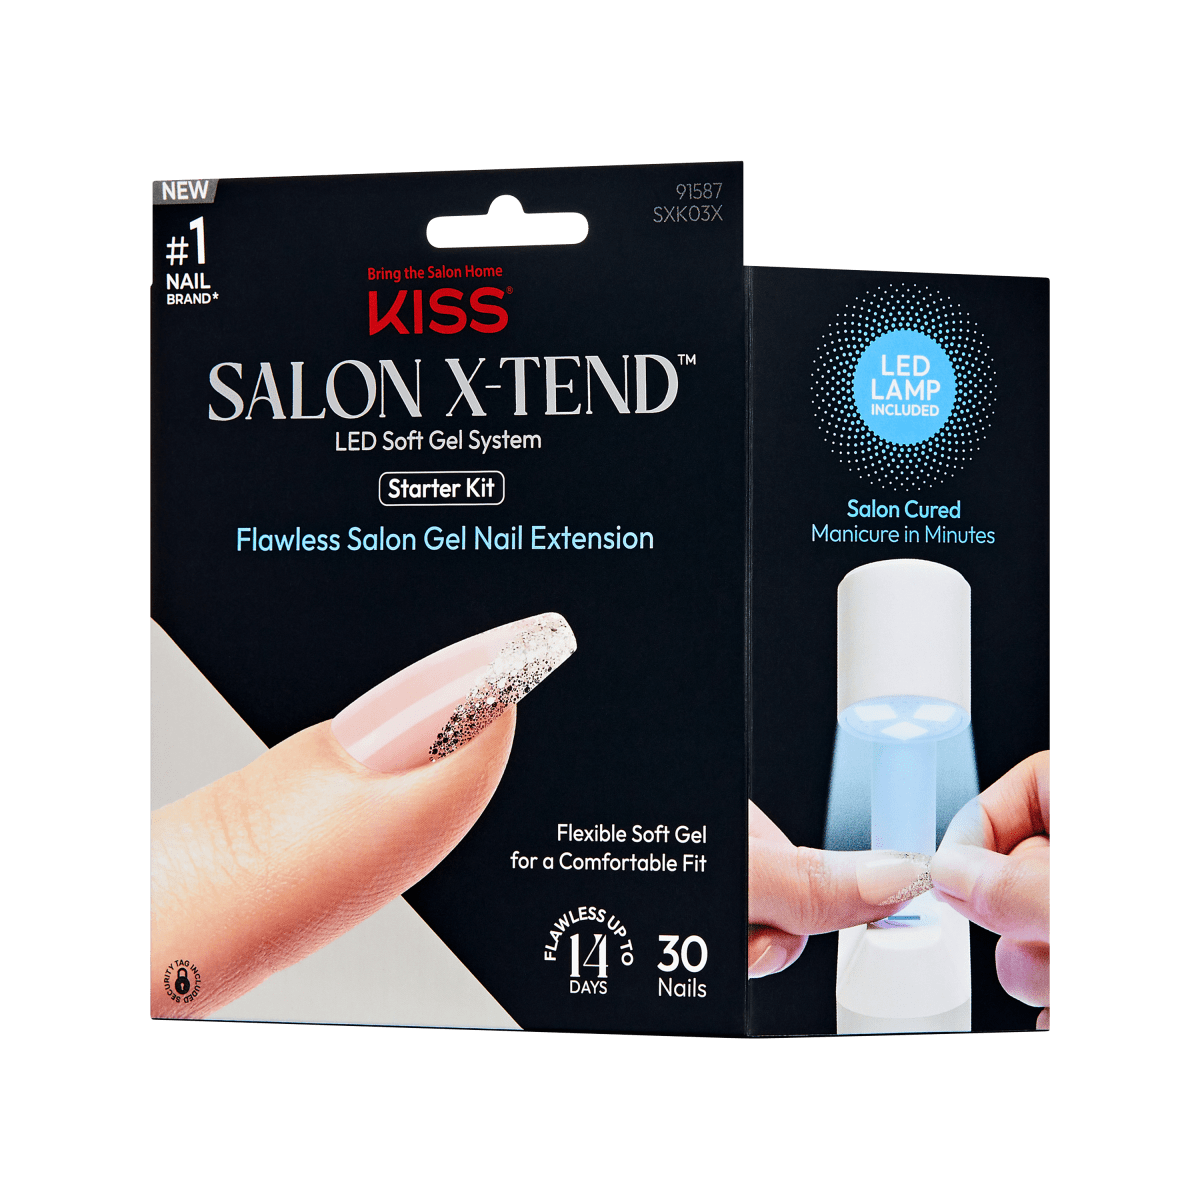 KISS Salon X-tend LED Soft Gel System - Idol